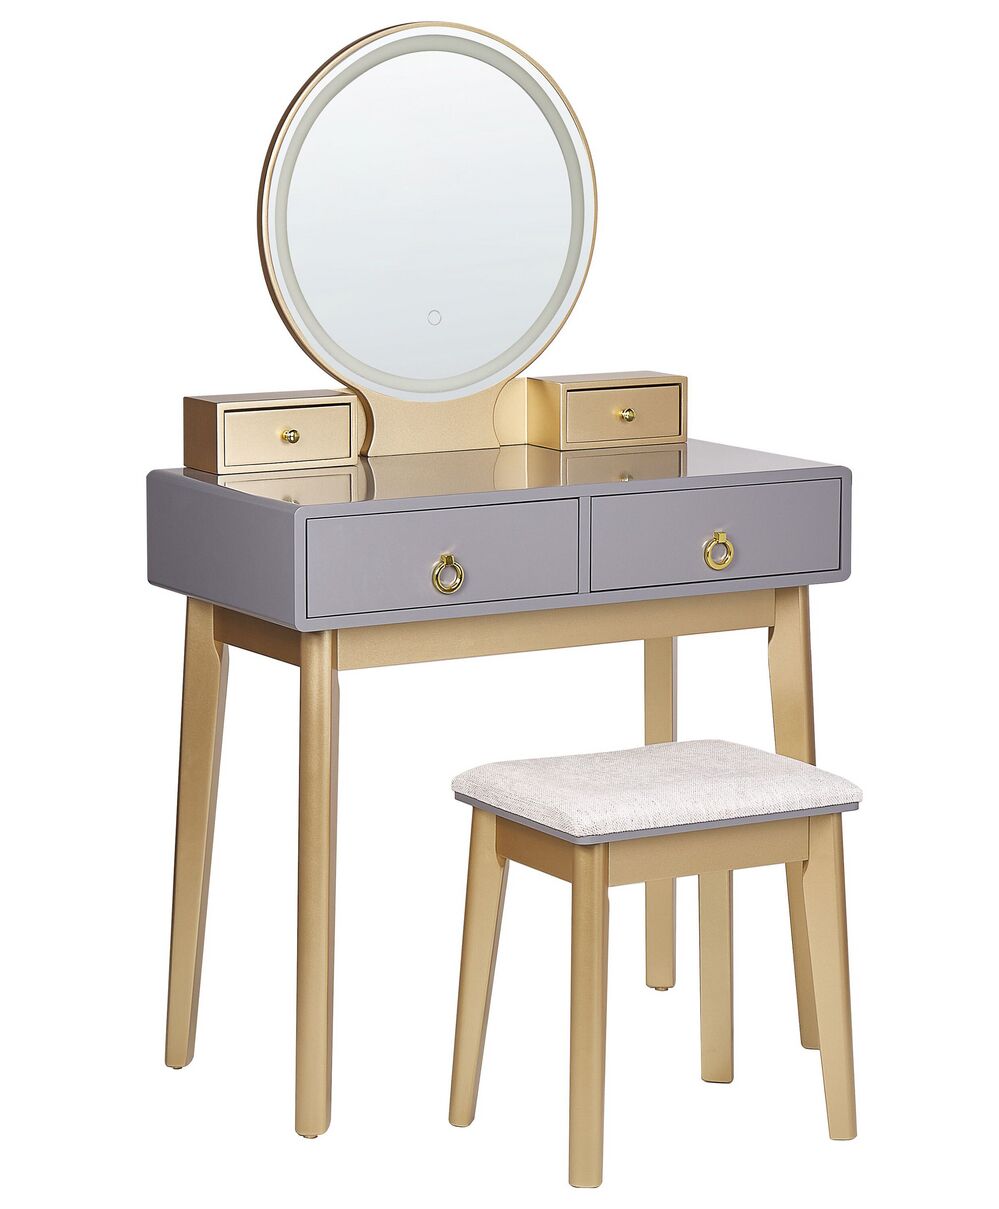 COSTWAY Coiffeuse,Table de Maquillage avec Miroir Oval et 10